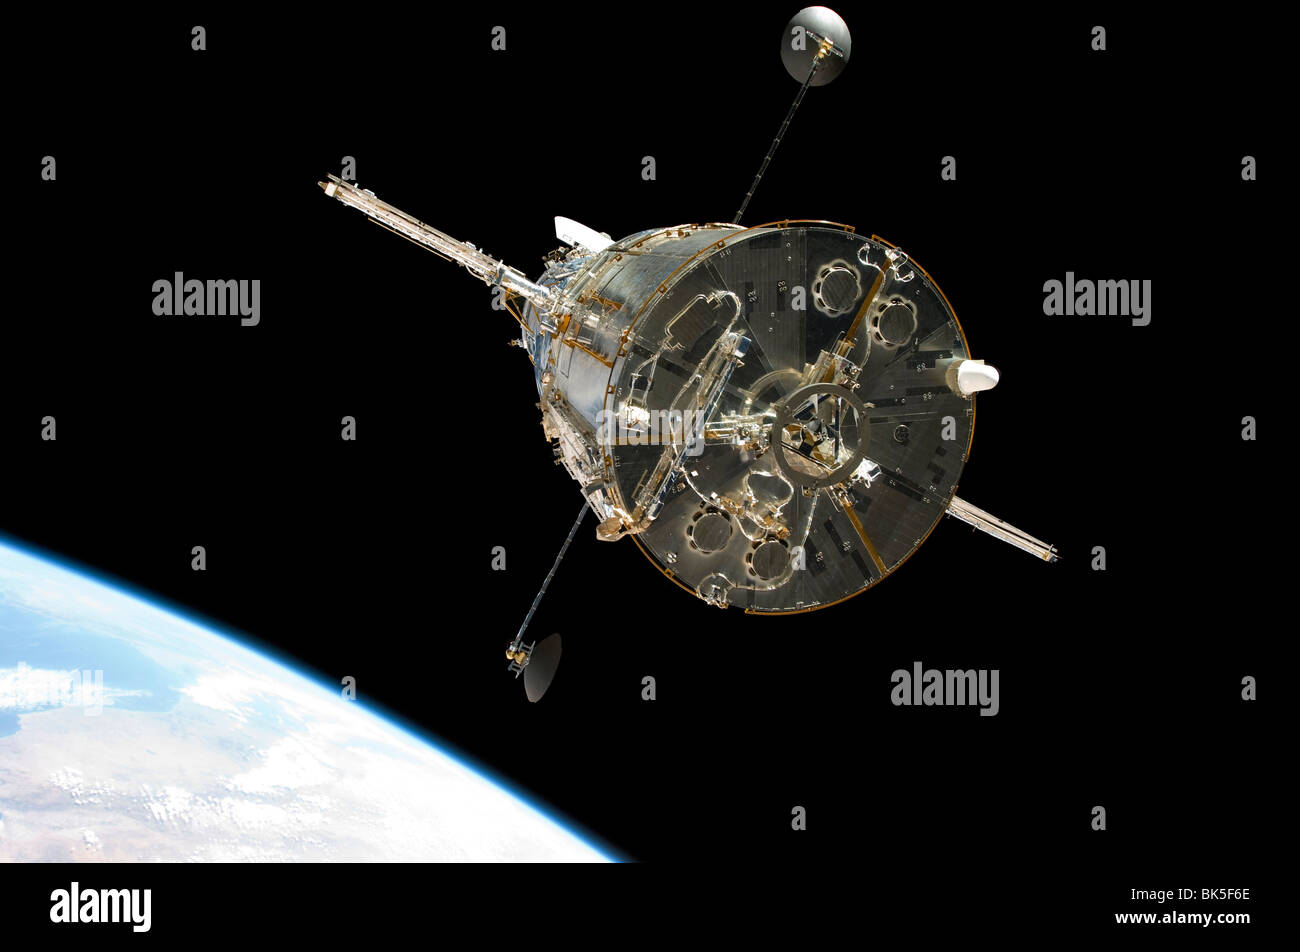 Un membro di equipaggio a bordo della navetta spaziale Atlantis catturato questo ancora immagine del telescopio spaziale Hubble Foto Stock